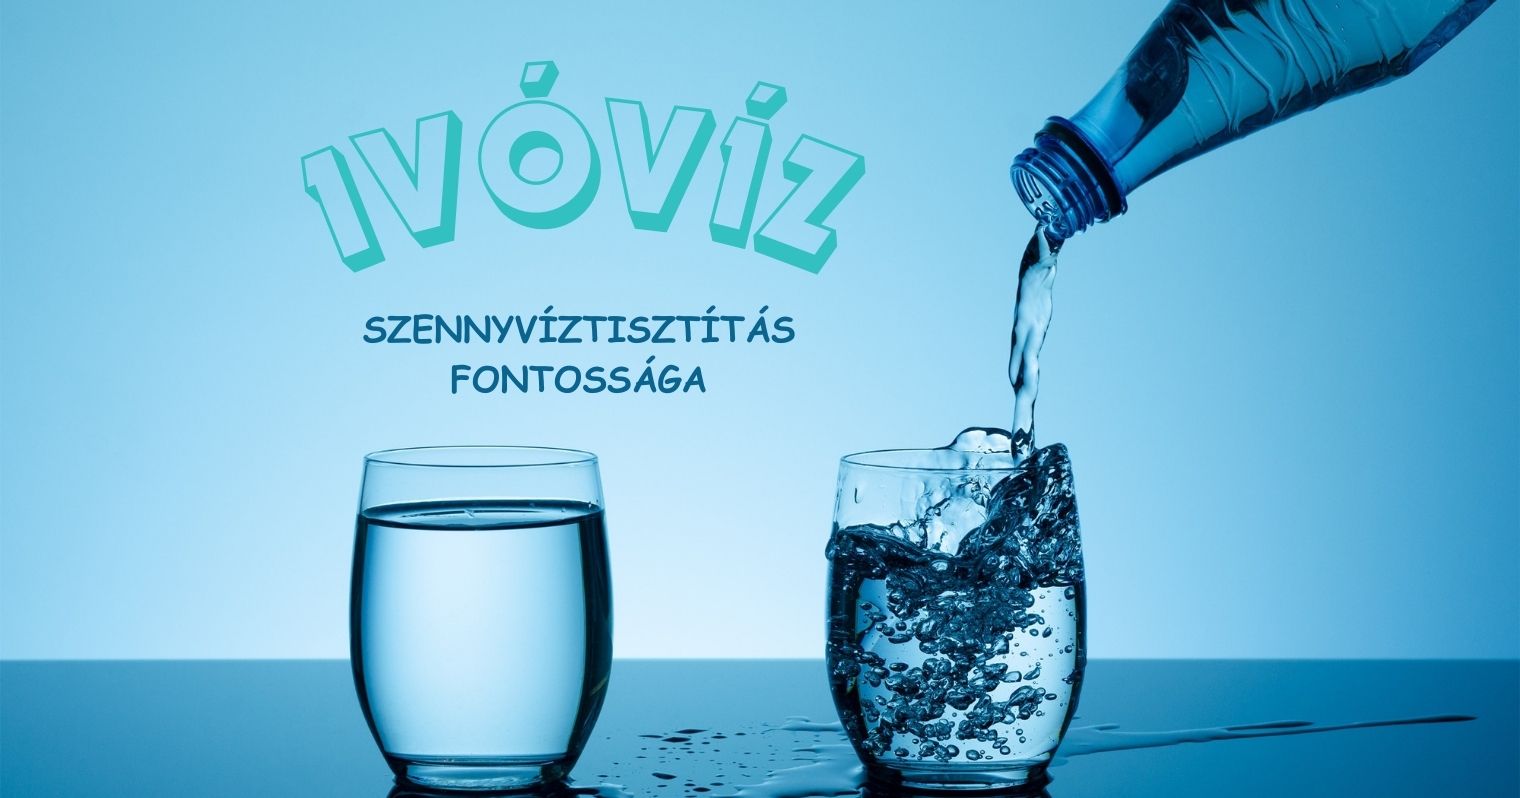 Egy kék háttér előtt áll egy vízzel teli pohár és mellette egy másik pohár amibe épp vizet öntenek egy üvegből, a képen felirat is látható: "Ivóvíz, szennyvíztisztítás fontossága".